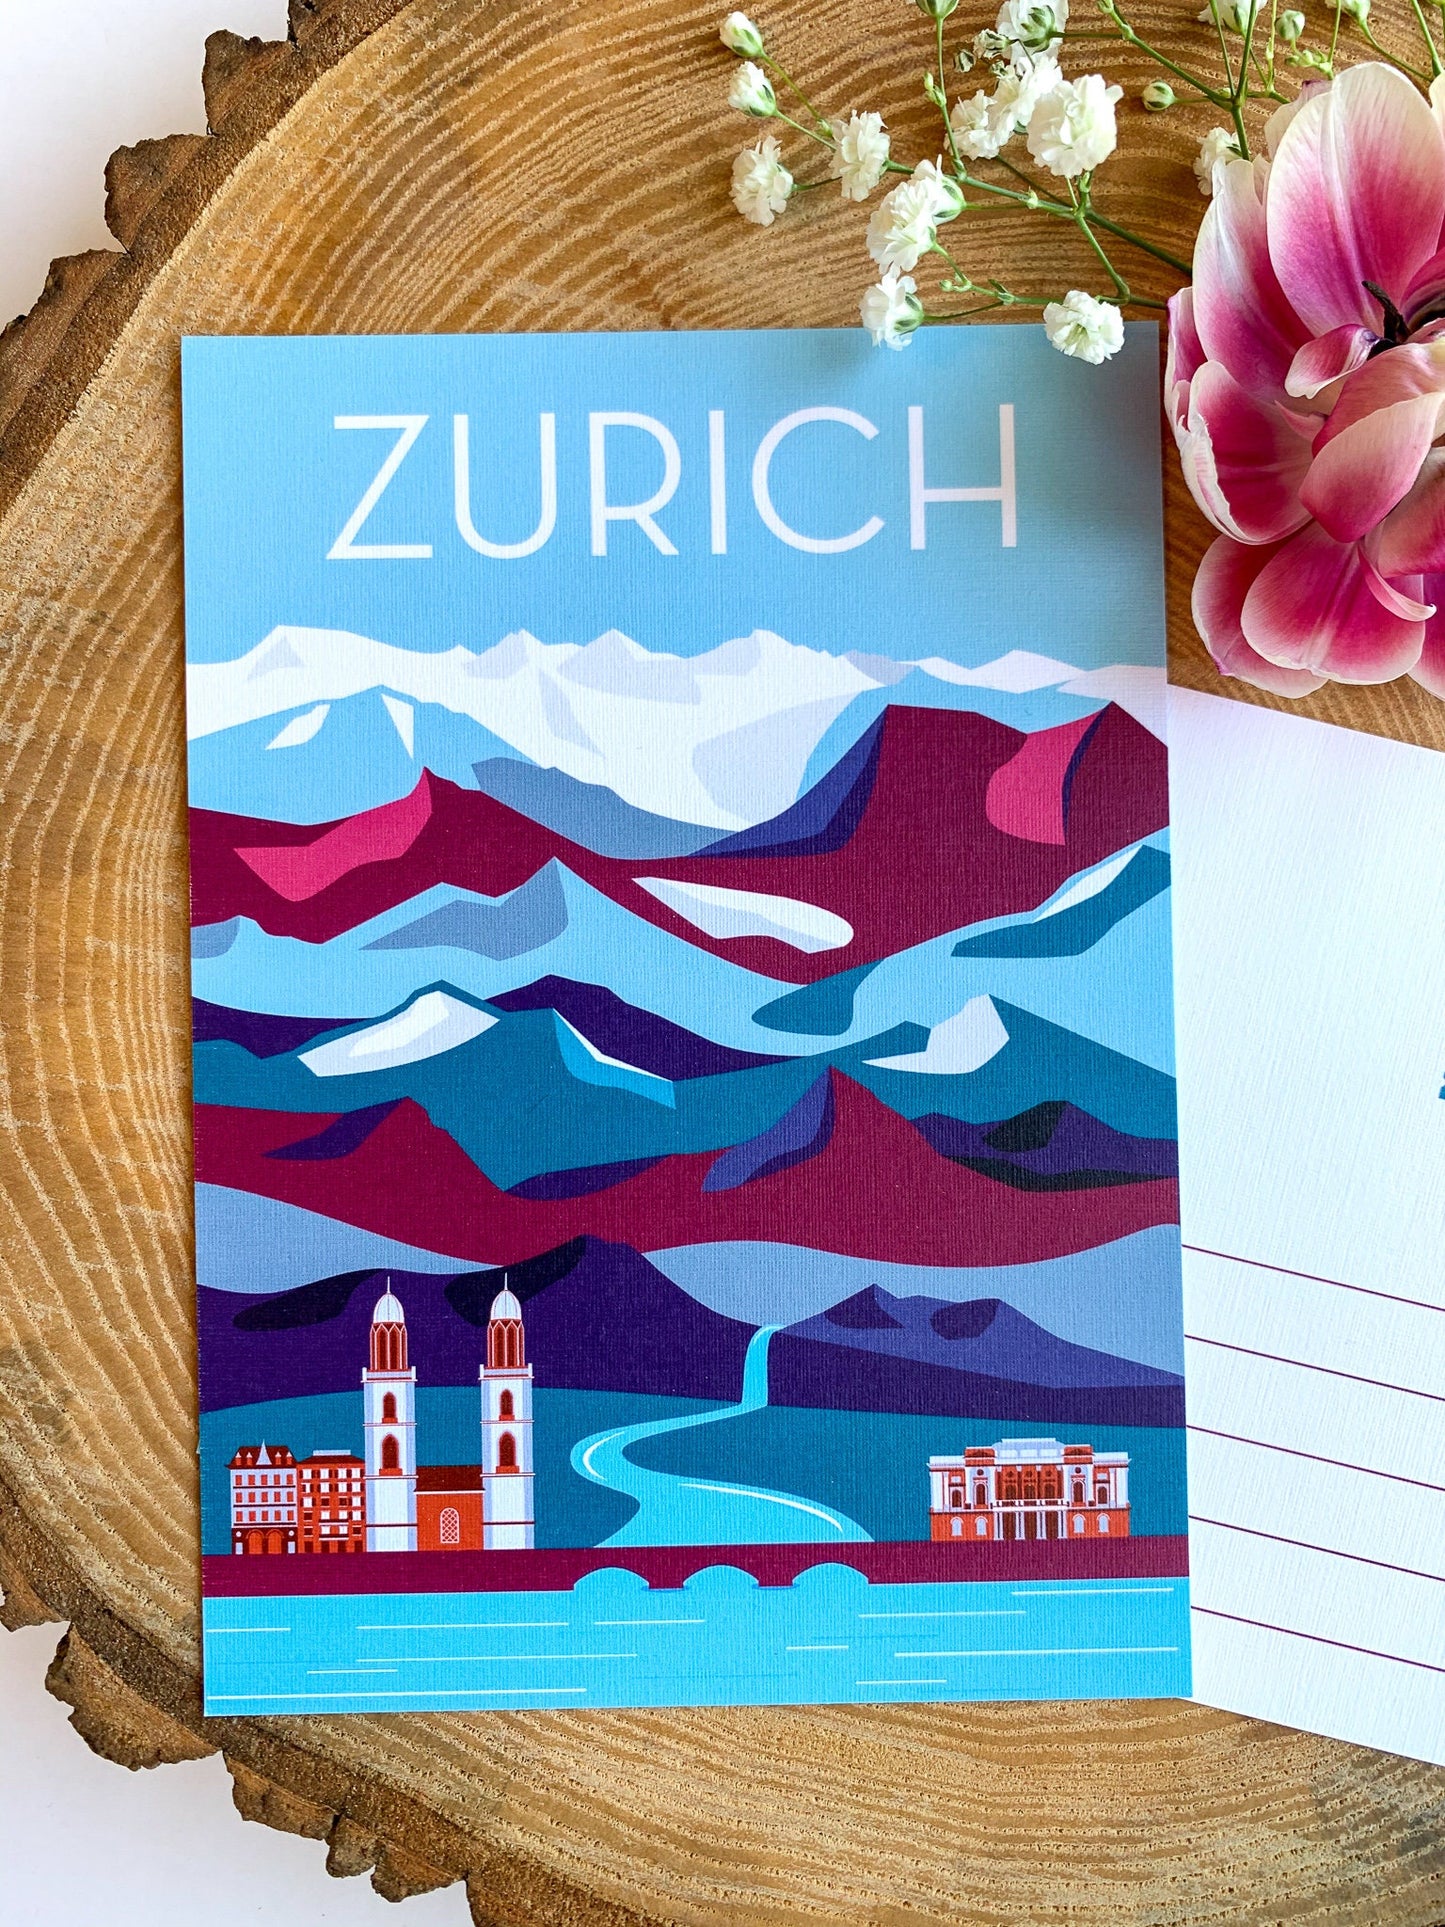 Zurich, Switzerland Travel Postcard